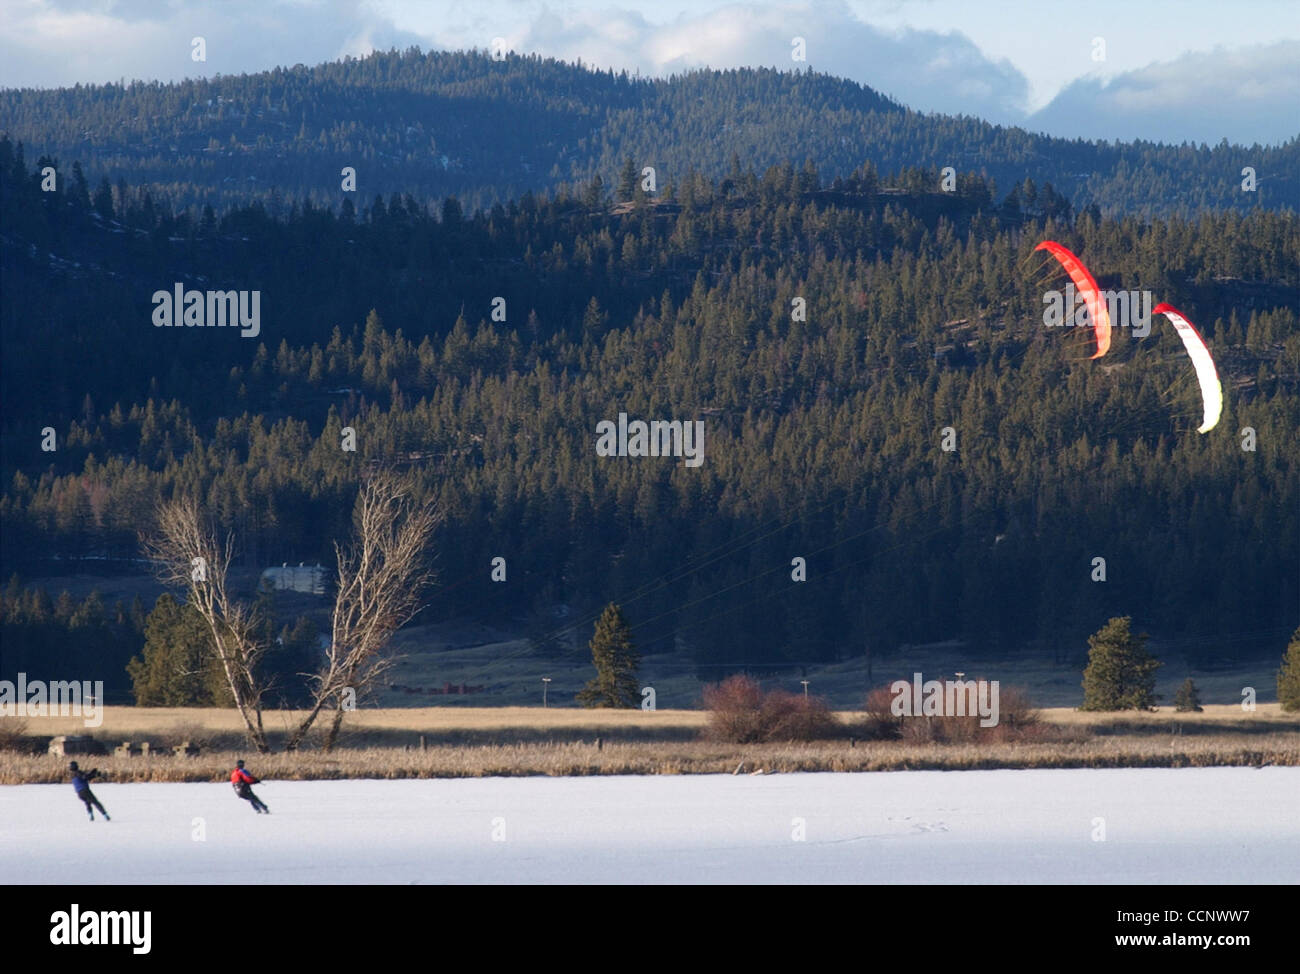 20. Februar 2003 wird durch eine speziell entwickelte Kite - Kalispell, Montana, USA - MARK C. JOHNSON gezogen, beim Skifahren auf zugefrorenen Smith-See. Johnson trägt ein Leben-Jacke, Helm und Bein Protektoren beim Kite Skifahren auf dem Eis. Bei böigem Wind sagte Johnson er Geschwindigkeiten rund 60 Meilen pro Stunde erreicht hat.  (Cred Stockfoto